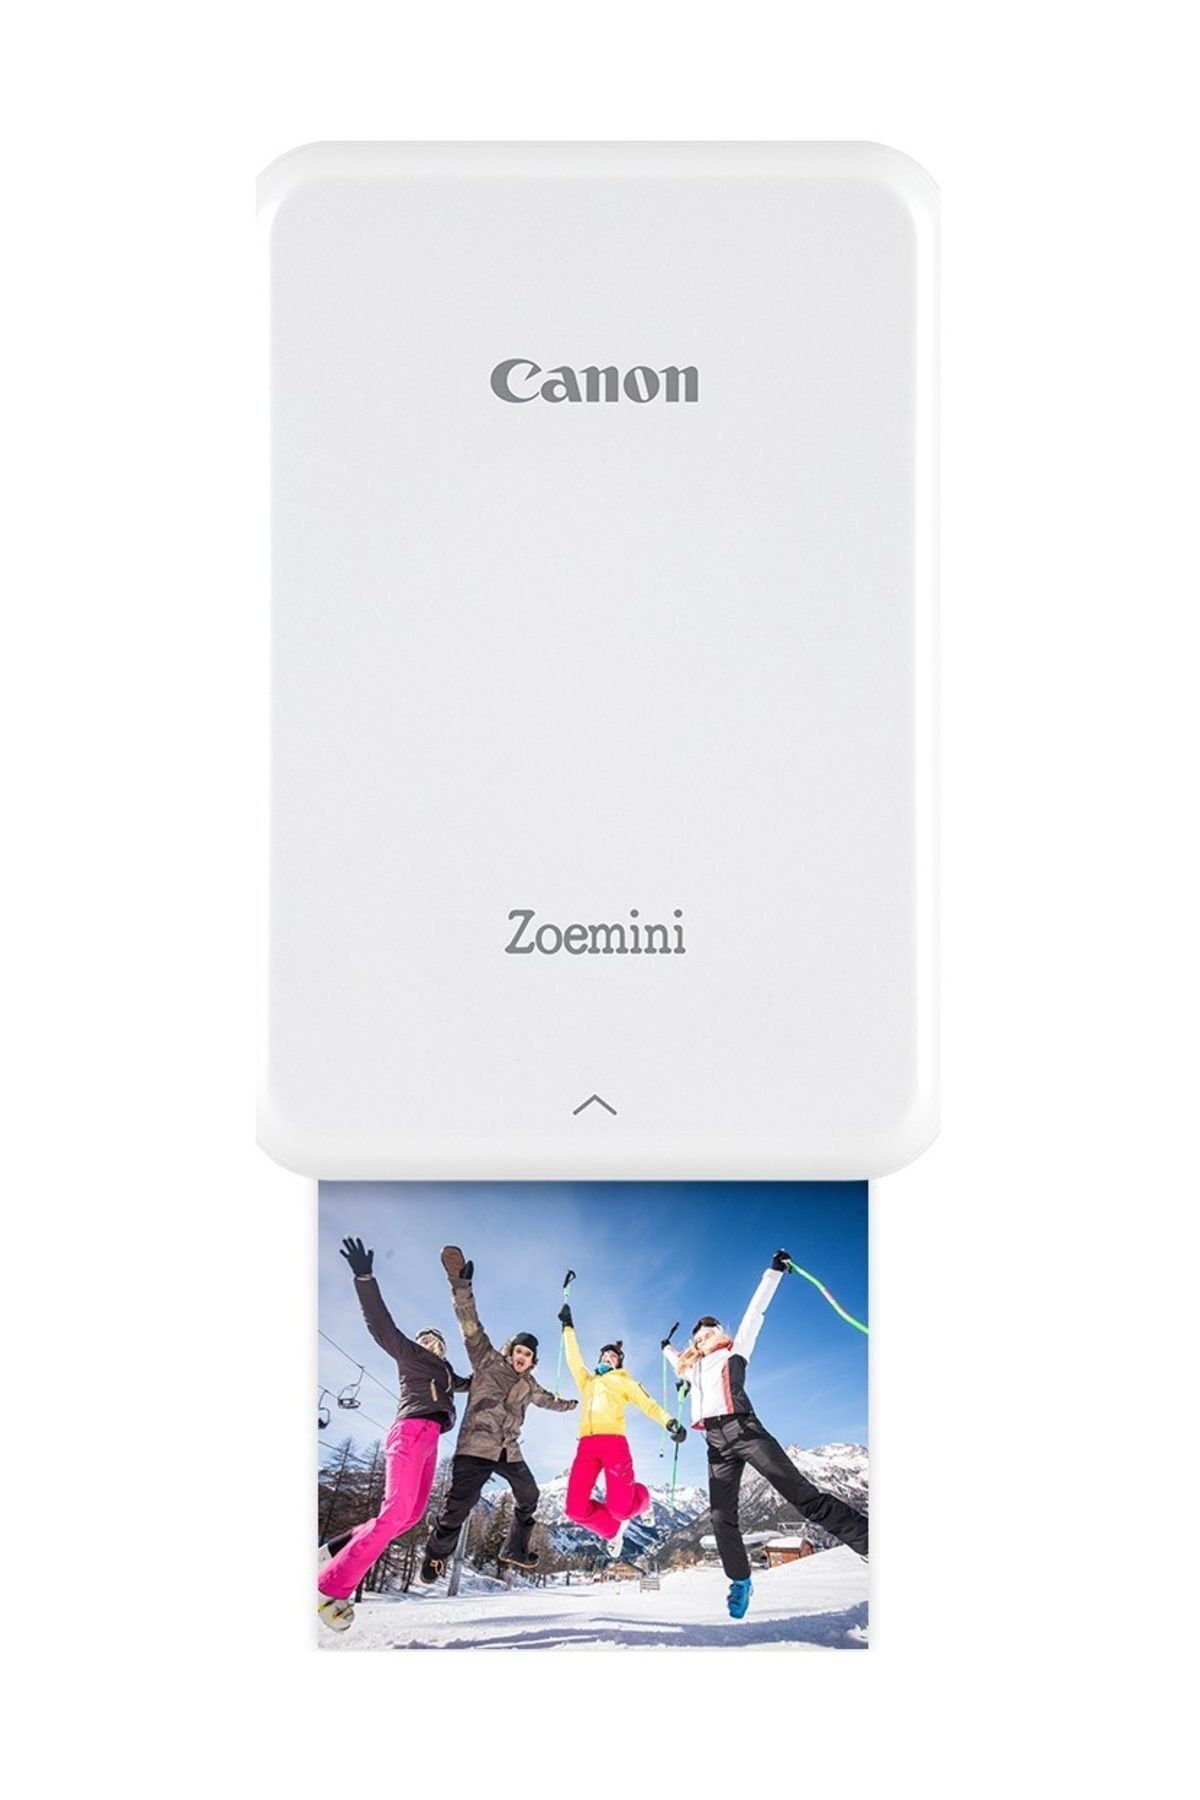 Canon Zoemini PV-123 Beyaz Fotoğraf Yazıcısı (Canon Eurasia Garantili)